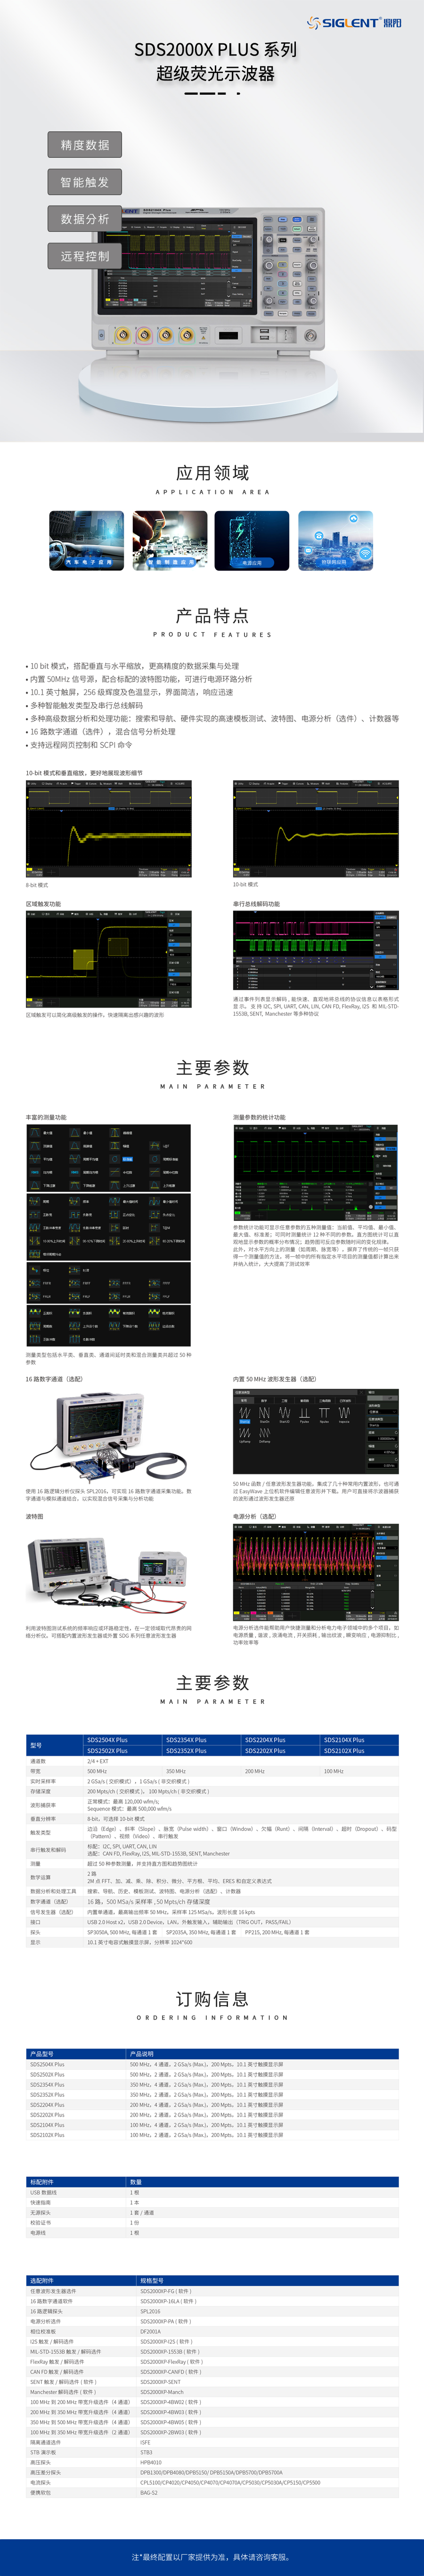 SDS2000X-Plus-系列超级荧光示波器-恢复的.jpg